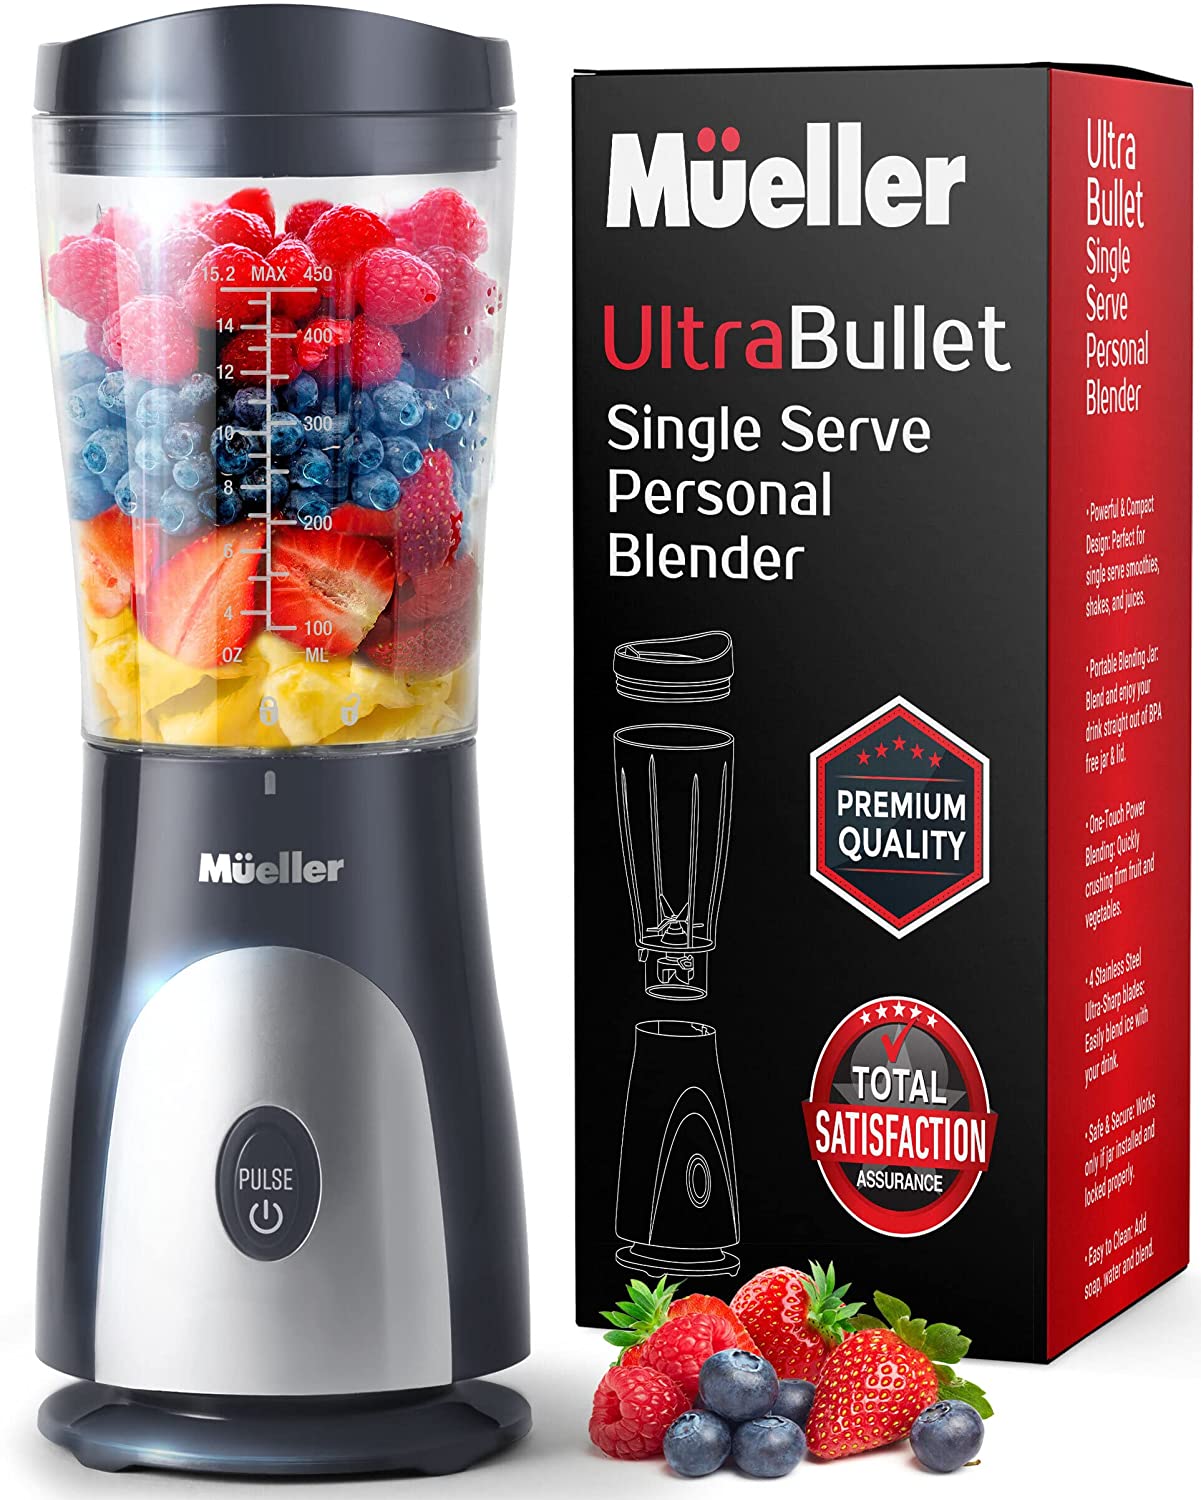 https://www.dontwasteyourmoney.com/wp-content/uploads/2022/04/mueller-ultra-bullet-portable-blending-jar-blender-for-protein-shakes-blenders-for-protein-shakes.jpg